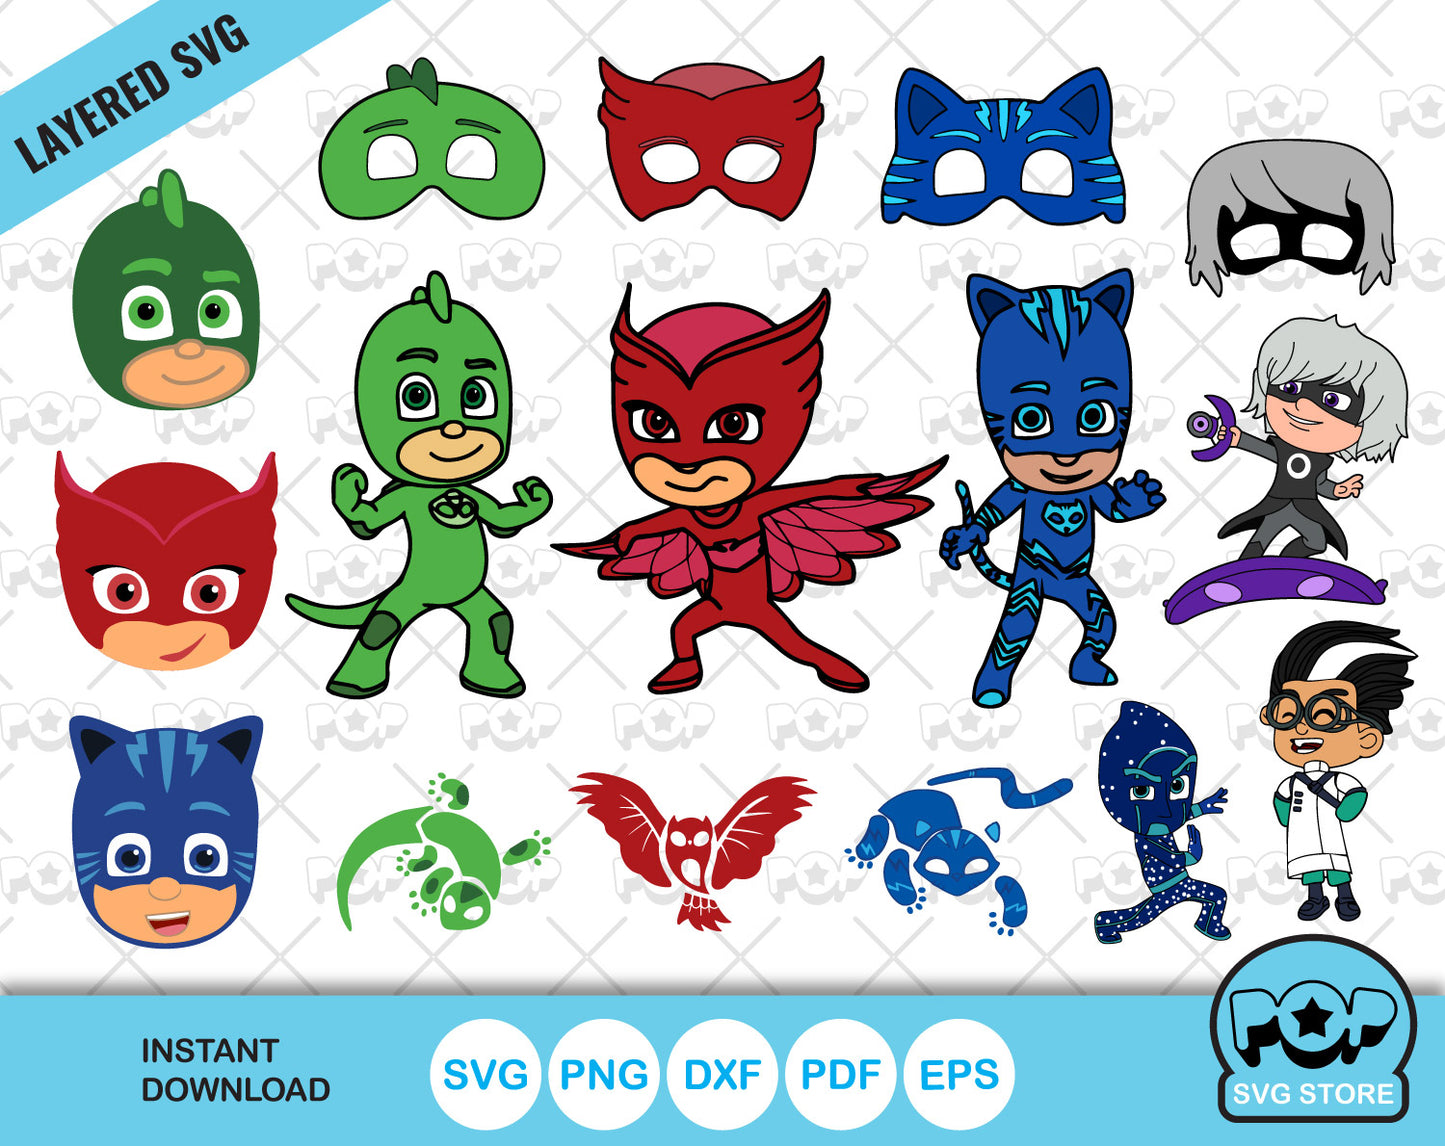 PJ Masks clipart set, PJ Masks SVG cut files for Cricut / Silhouette, PNG, DXF, instant download